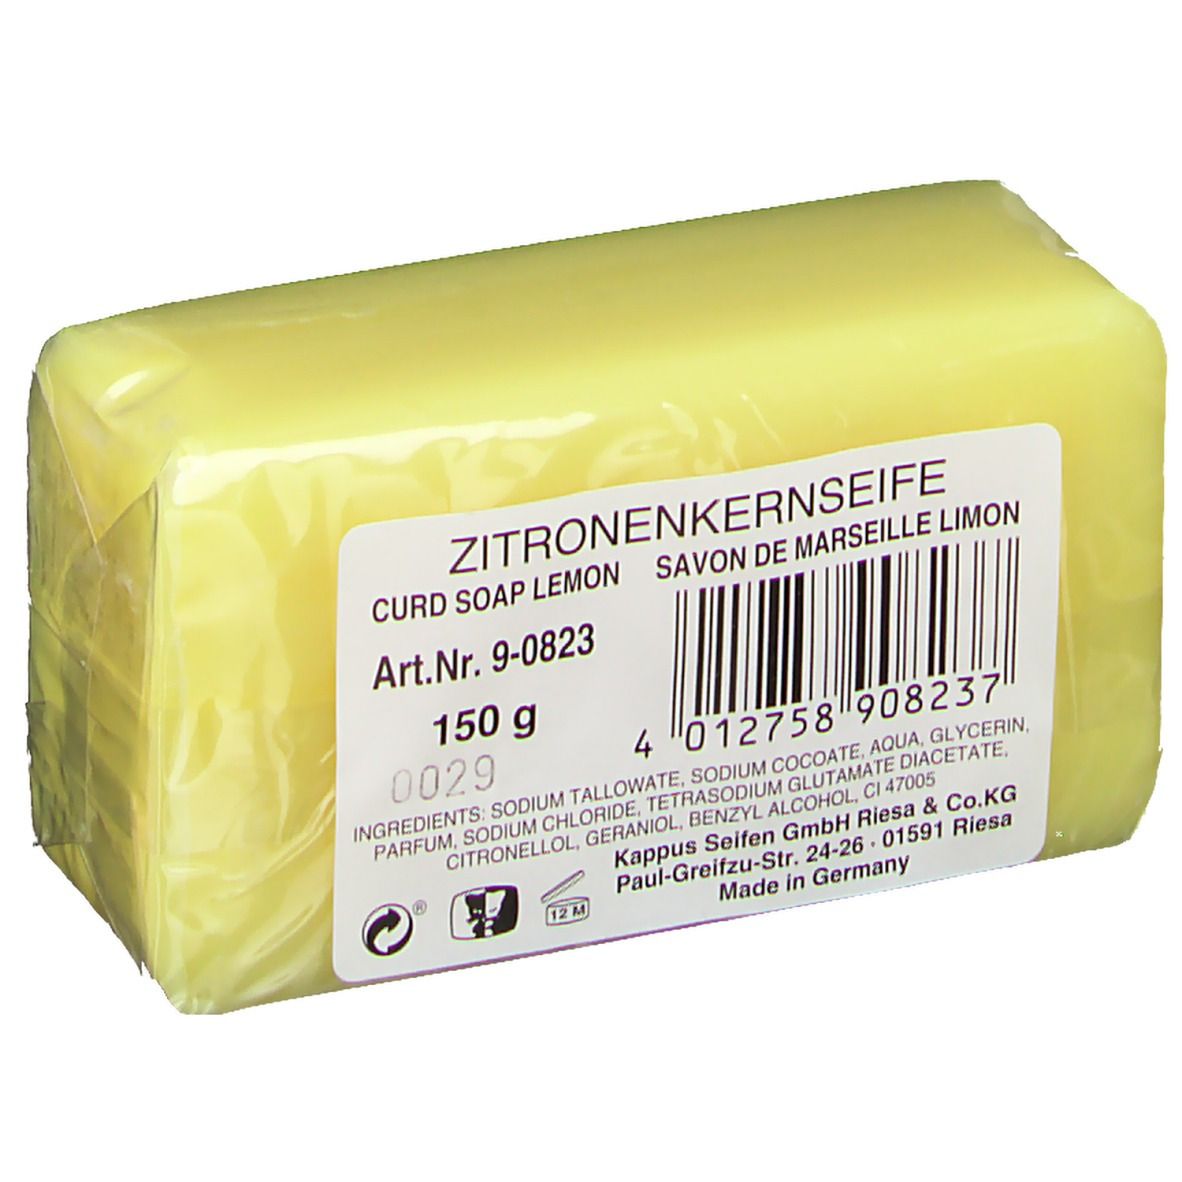 Kappus Kernseife Zitrone Shop Apotheke Ch